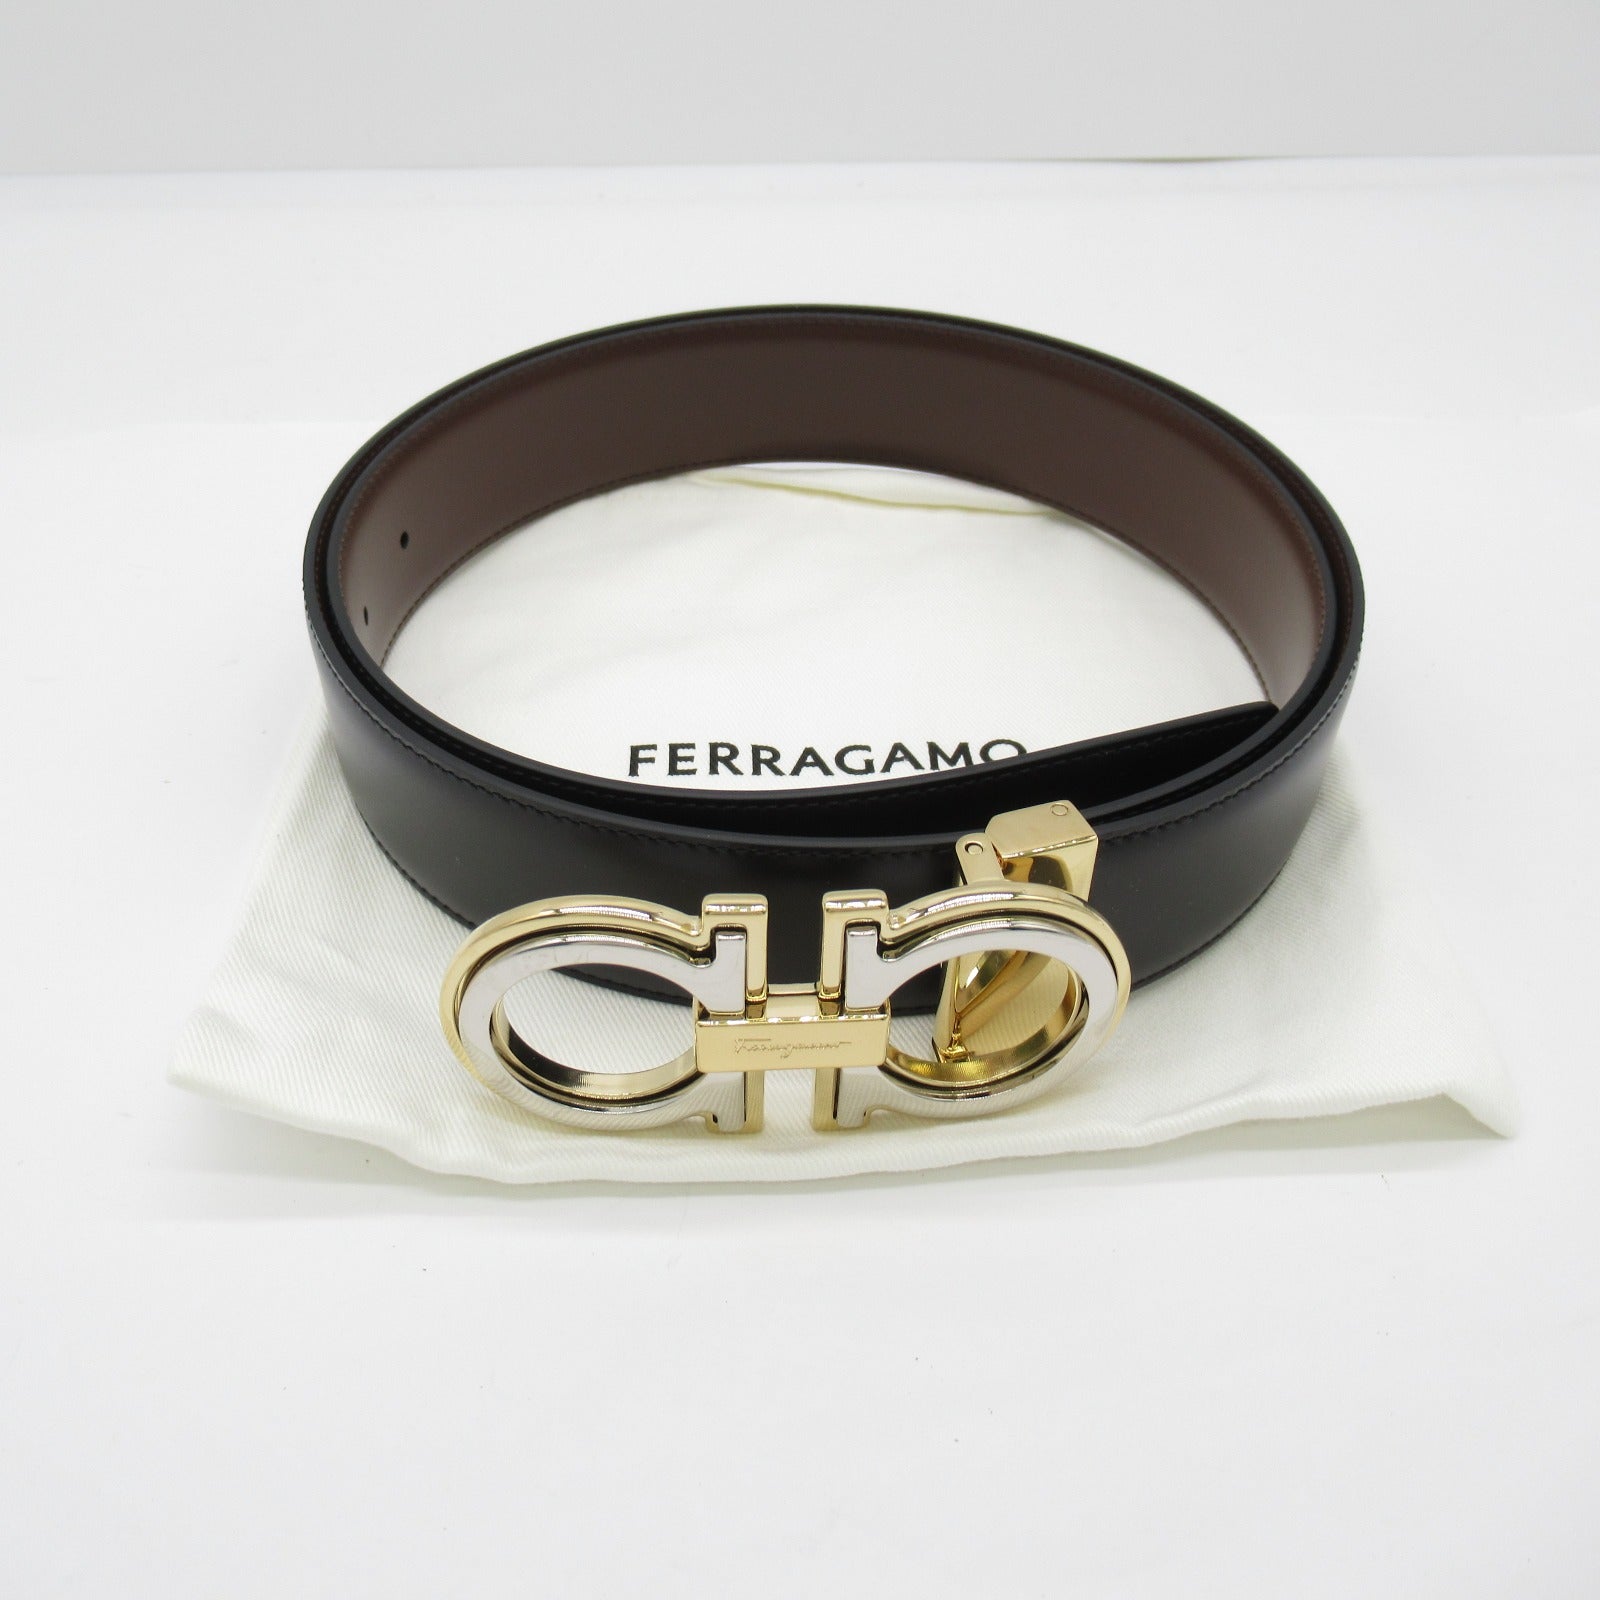 Salvatore Ferragamo Belt Belt Clothes For Mens Black/Brown 67A254764187C100